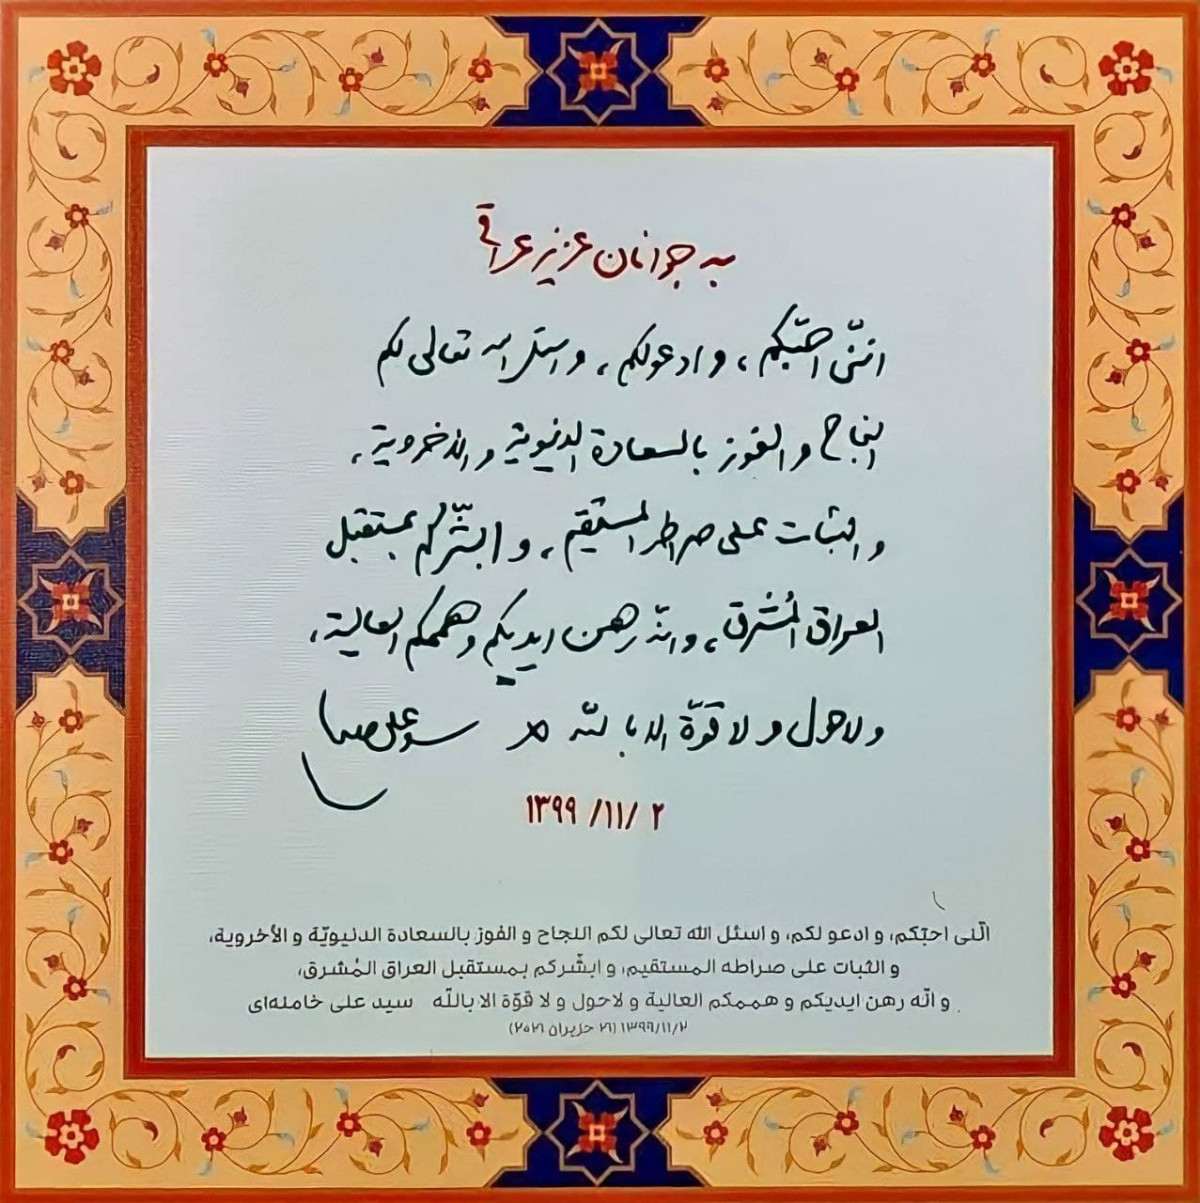 ‏رسالة من القلب وجهها الإمام الخامنئي إلى الشباب العراقي